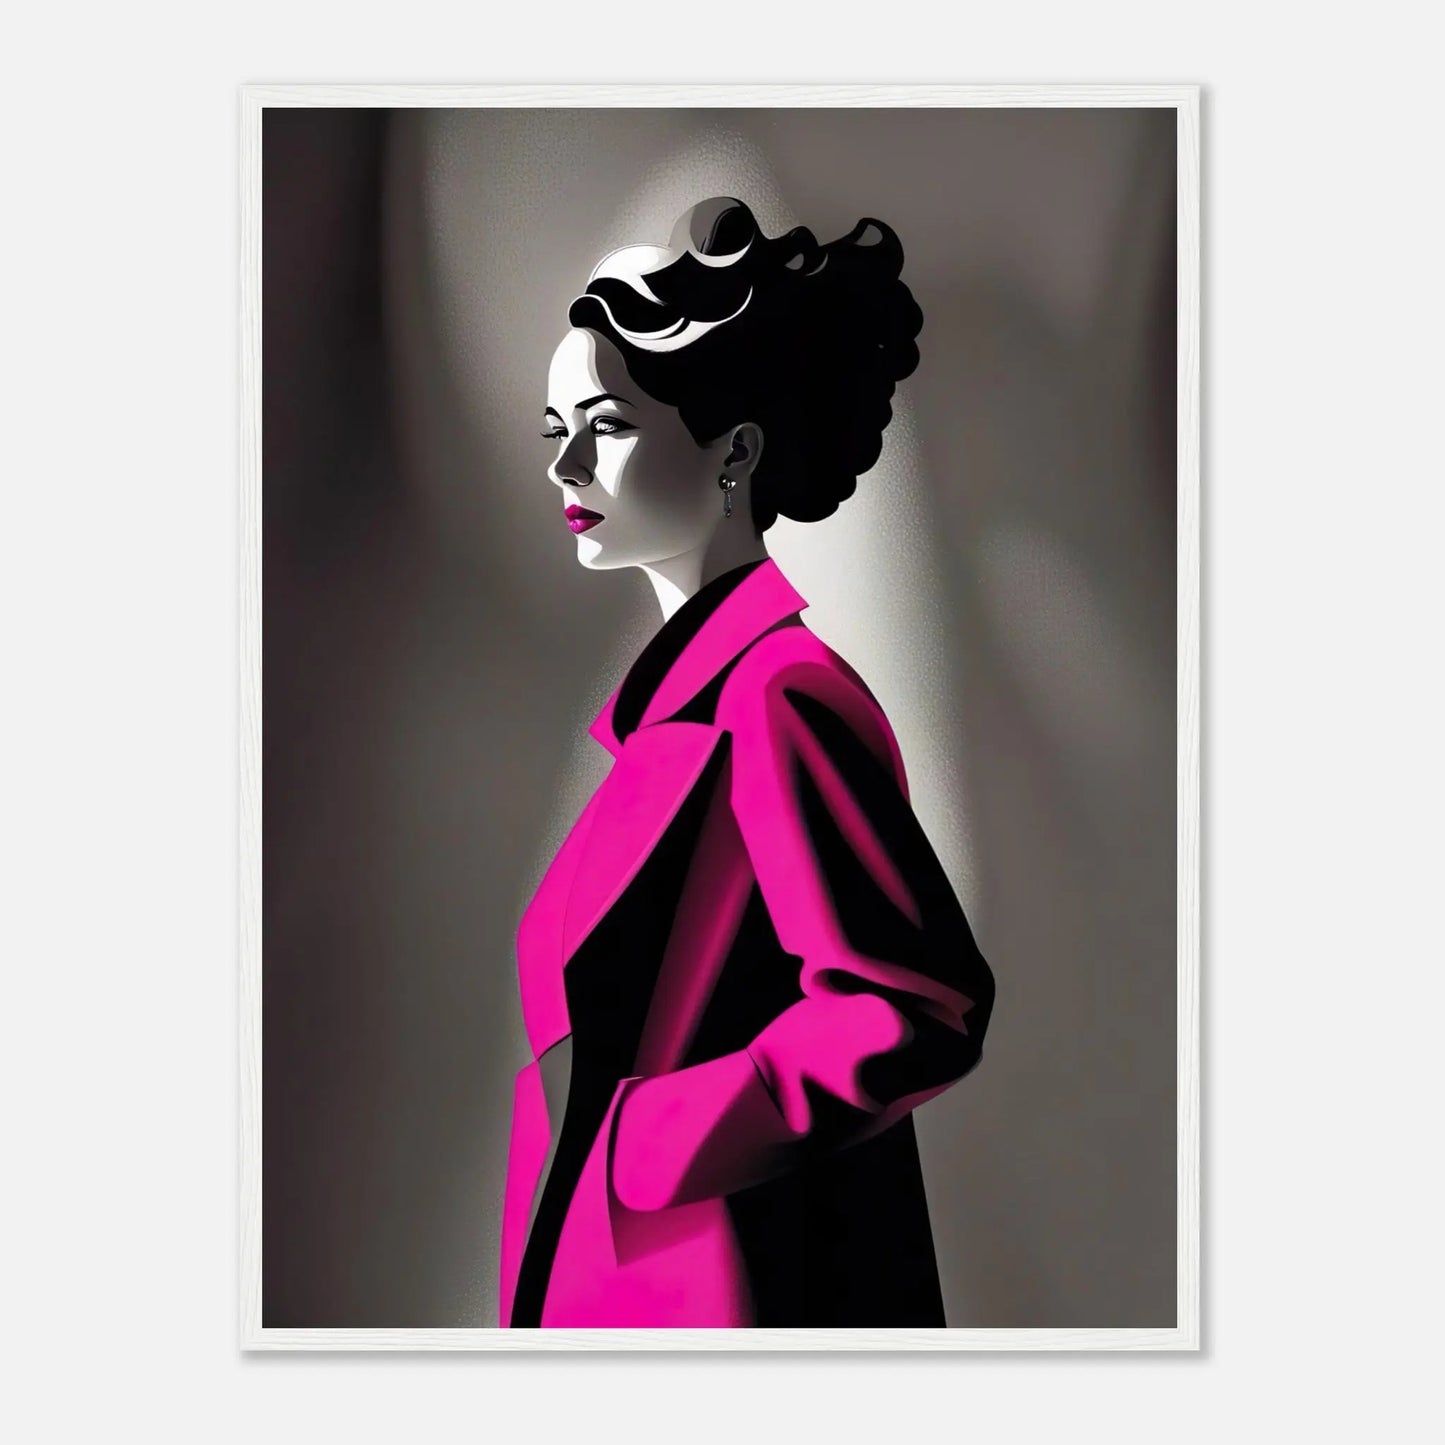 Gerahmtes Premium-Poster - Frau im rosa Mantel - Schwarz-Weiß, KI-Kunst - RolConArt, Schwarz-Weiß mit Akzentfarben, 60x80-cm-24x32-Weißer-Rahmen